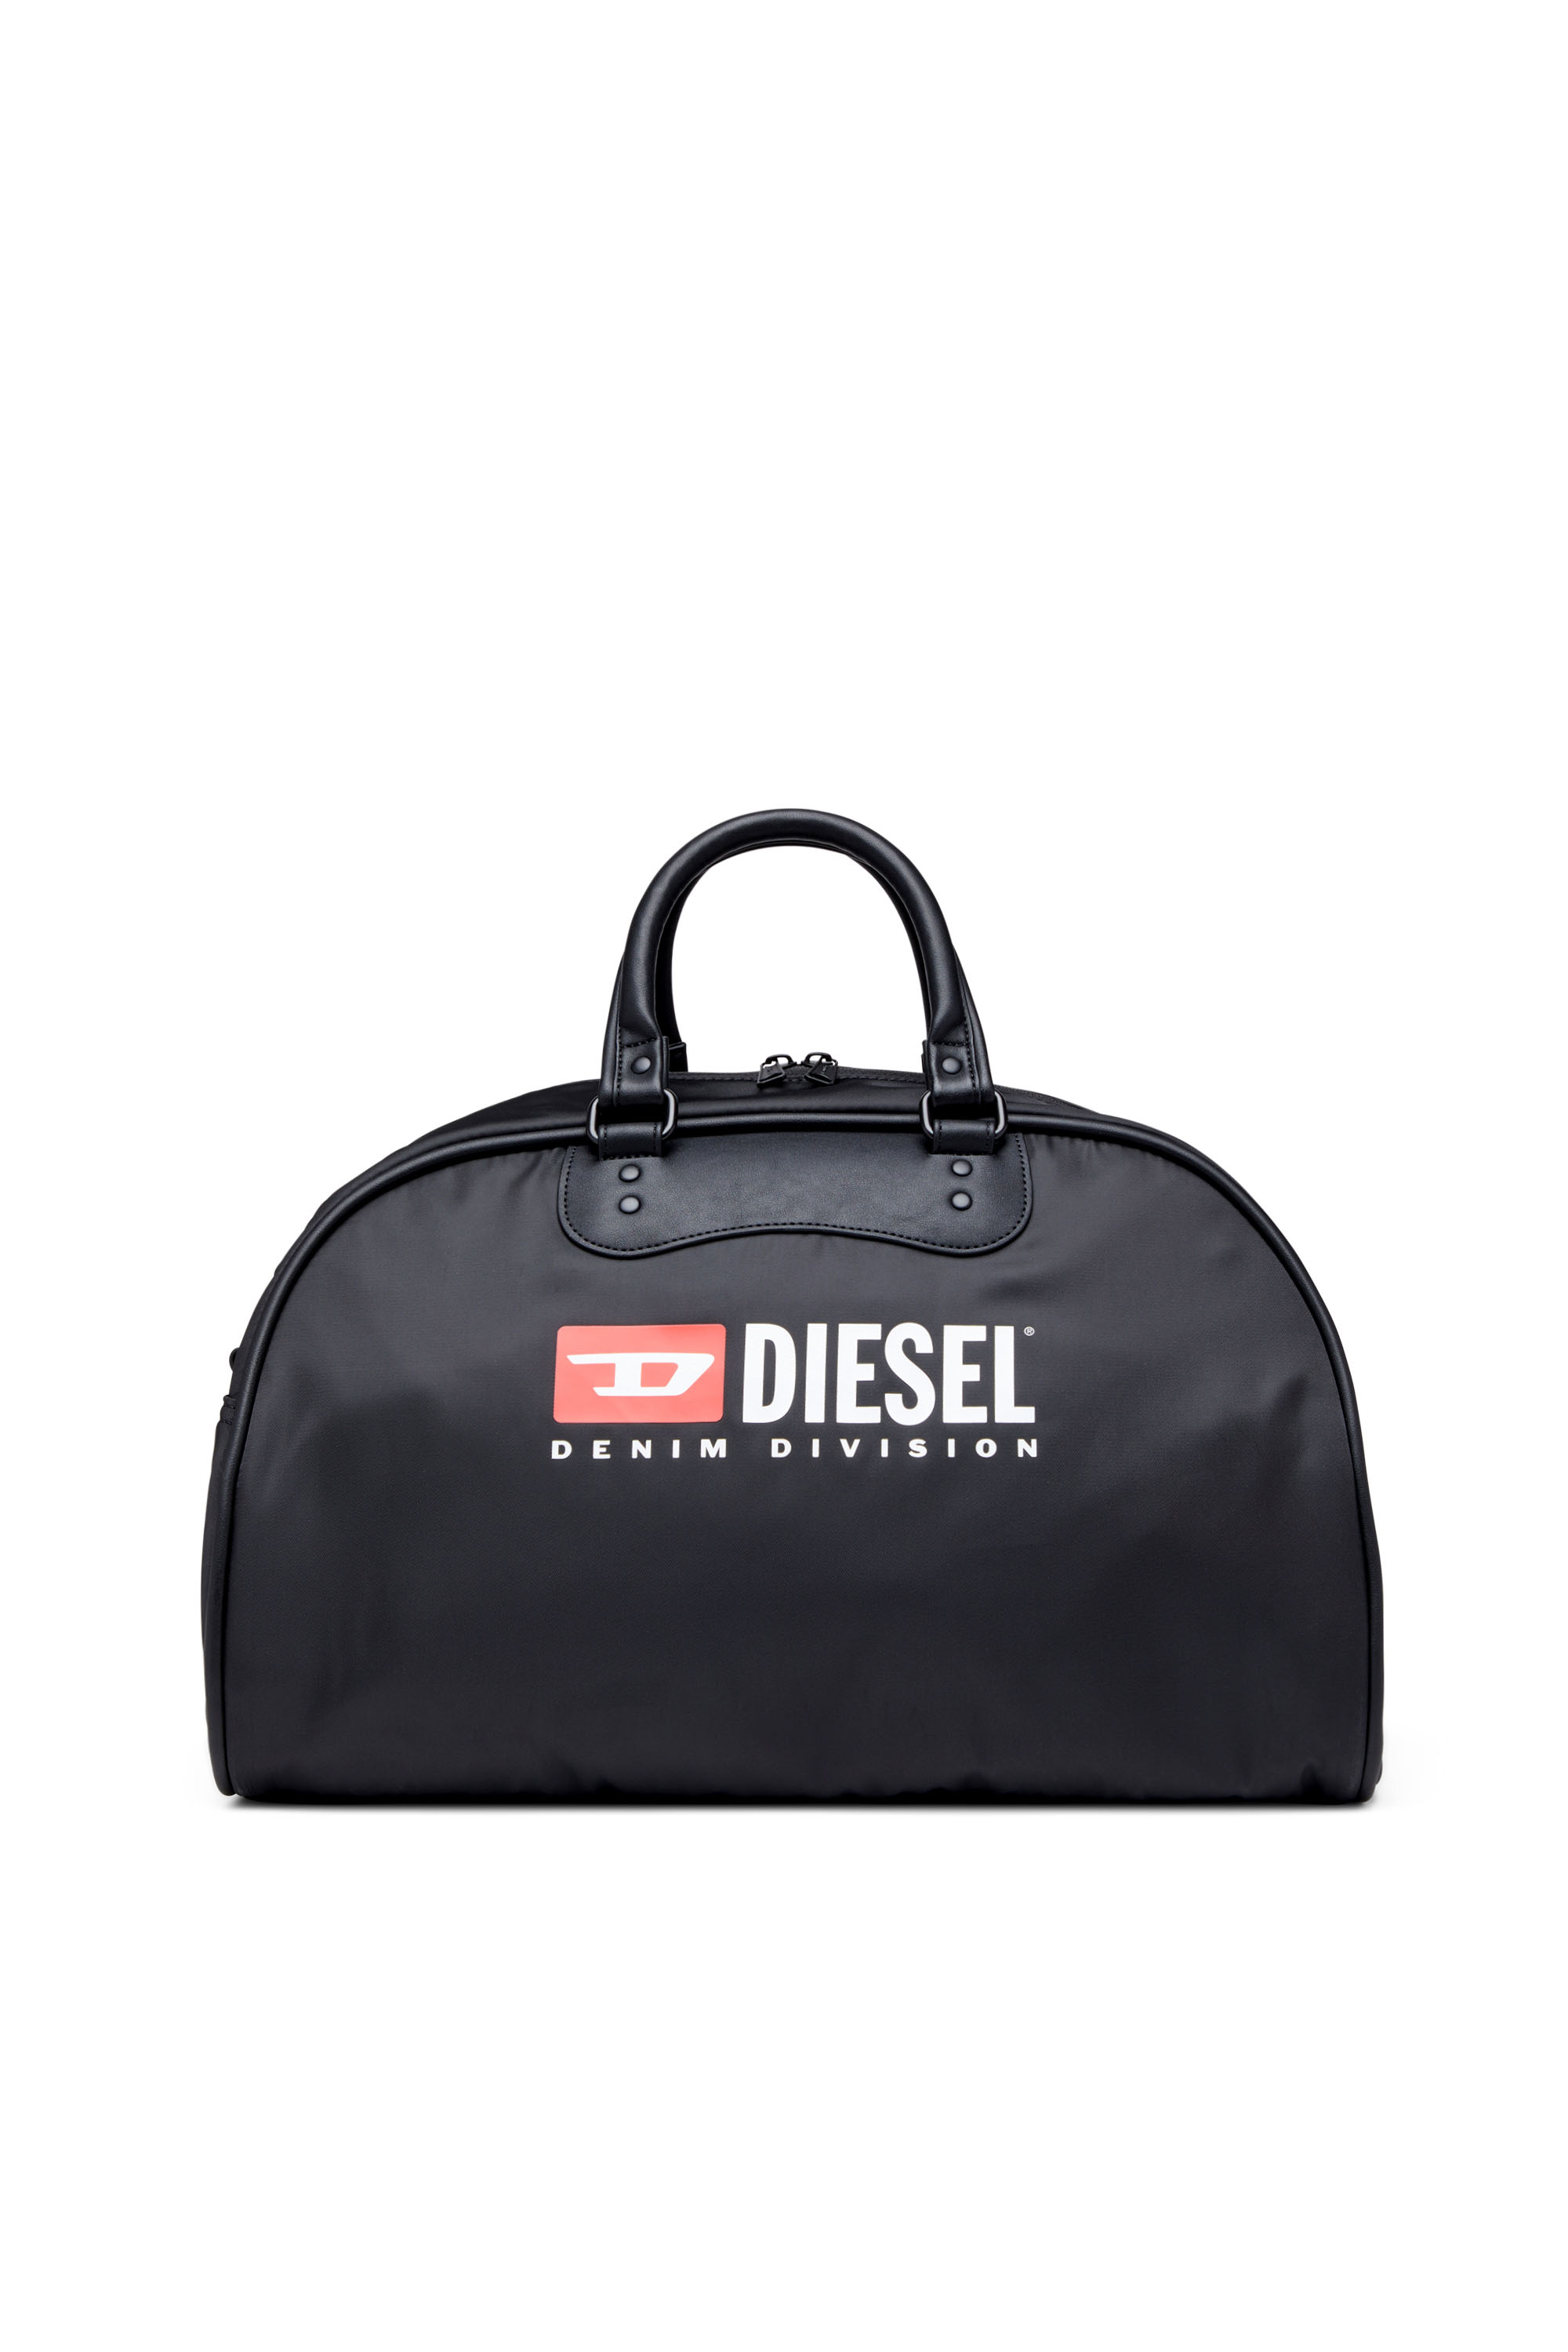 Diesel - RINKE DUFFLE, Noir - Image 1